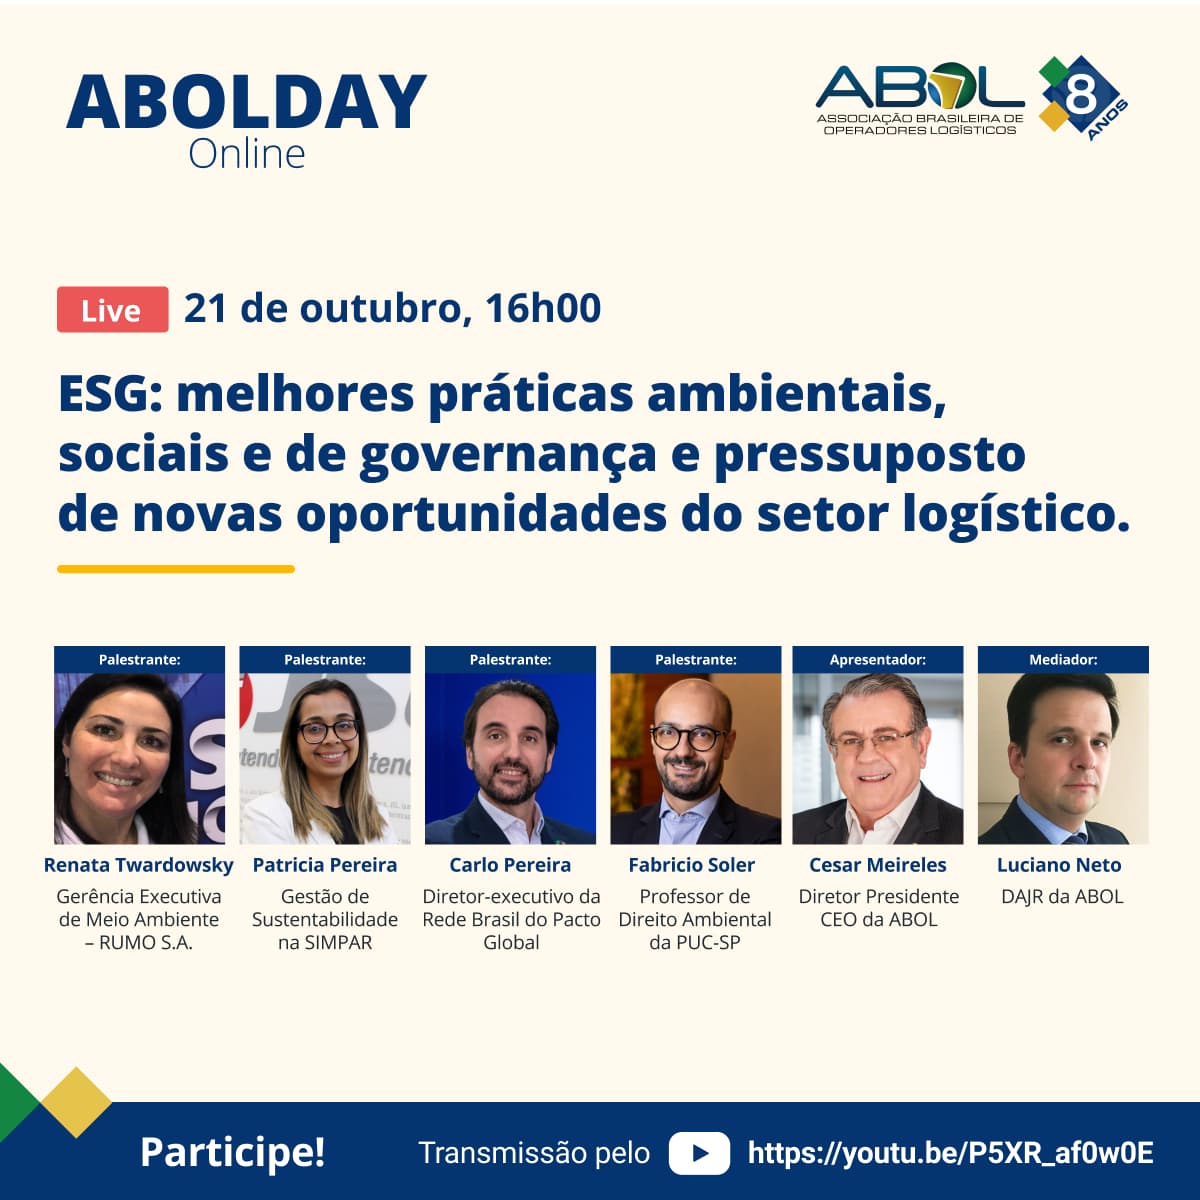  "ABOL DAY: ESG - melhores práticas ambientais, sociais e de governança e pressuposto de novas oportunidades do setor logístico"